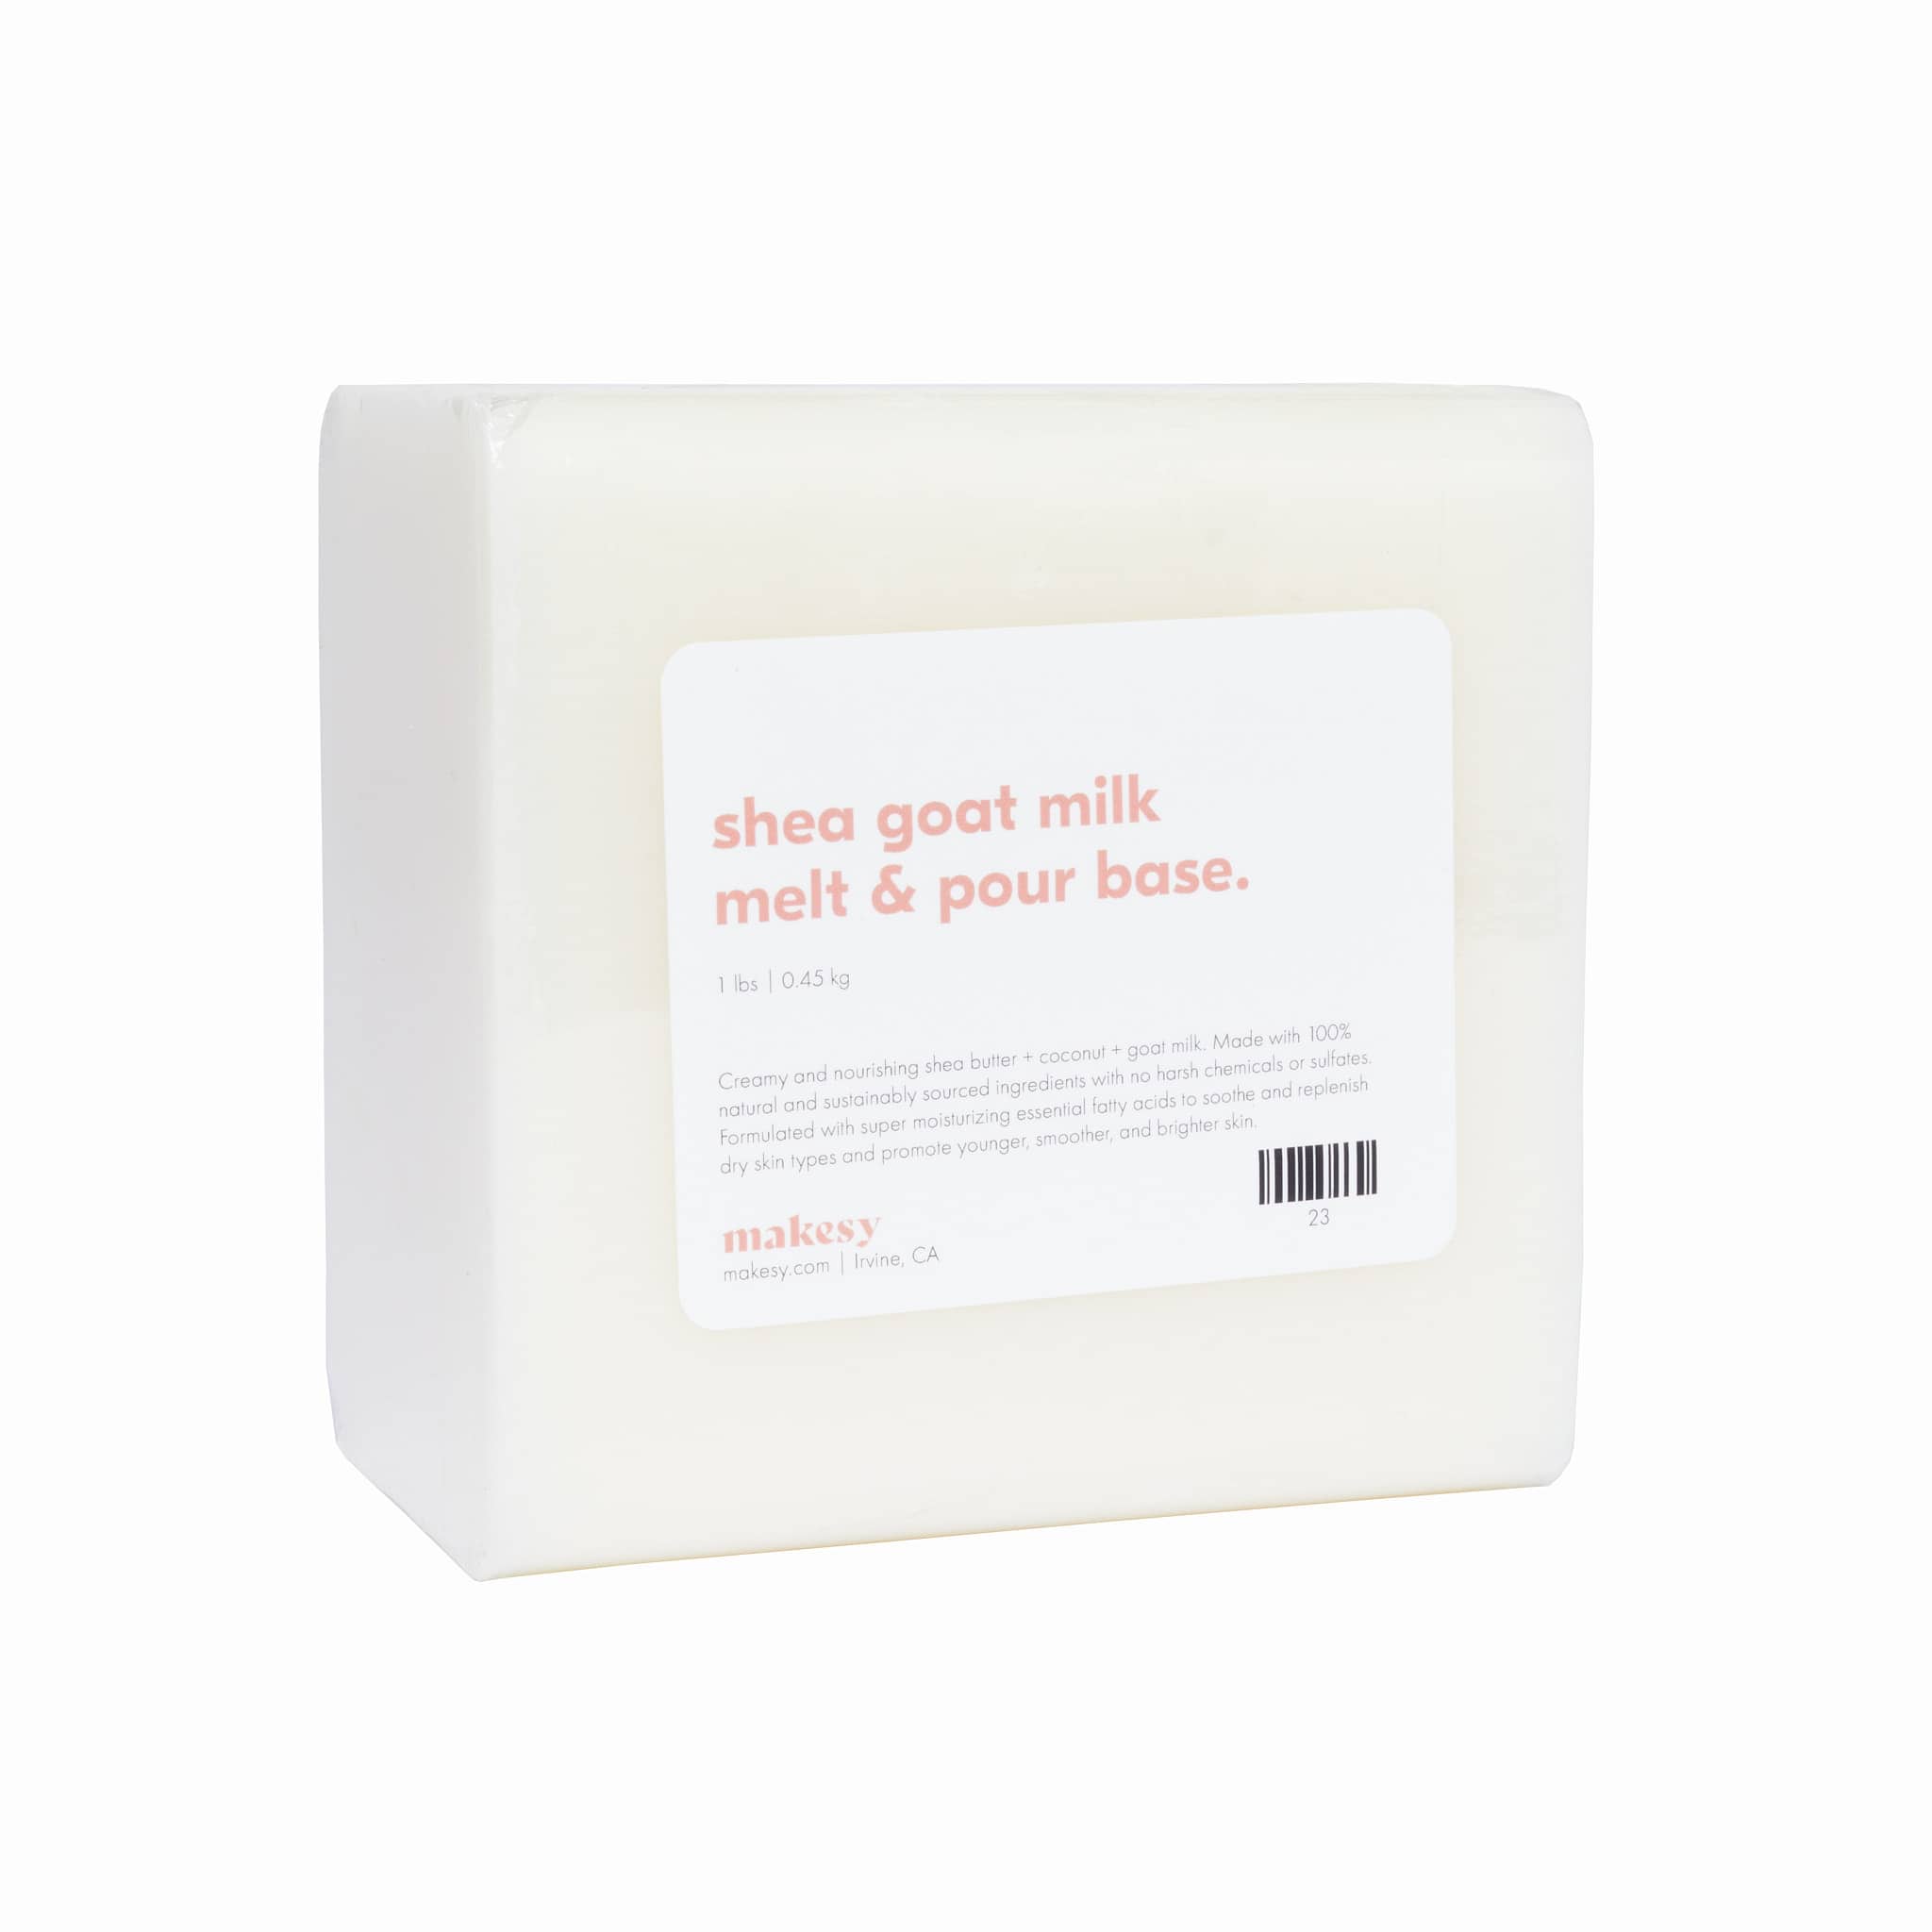 Goats Milk Melt and Pour Soap Base